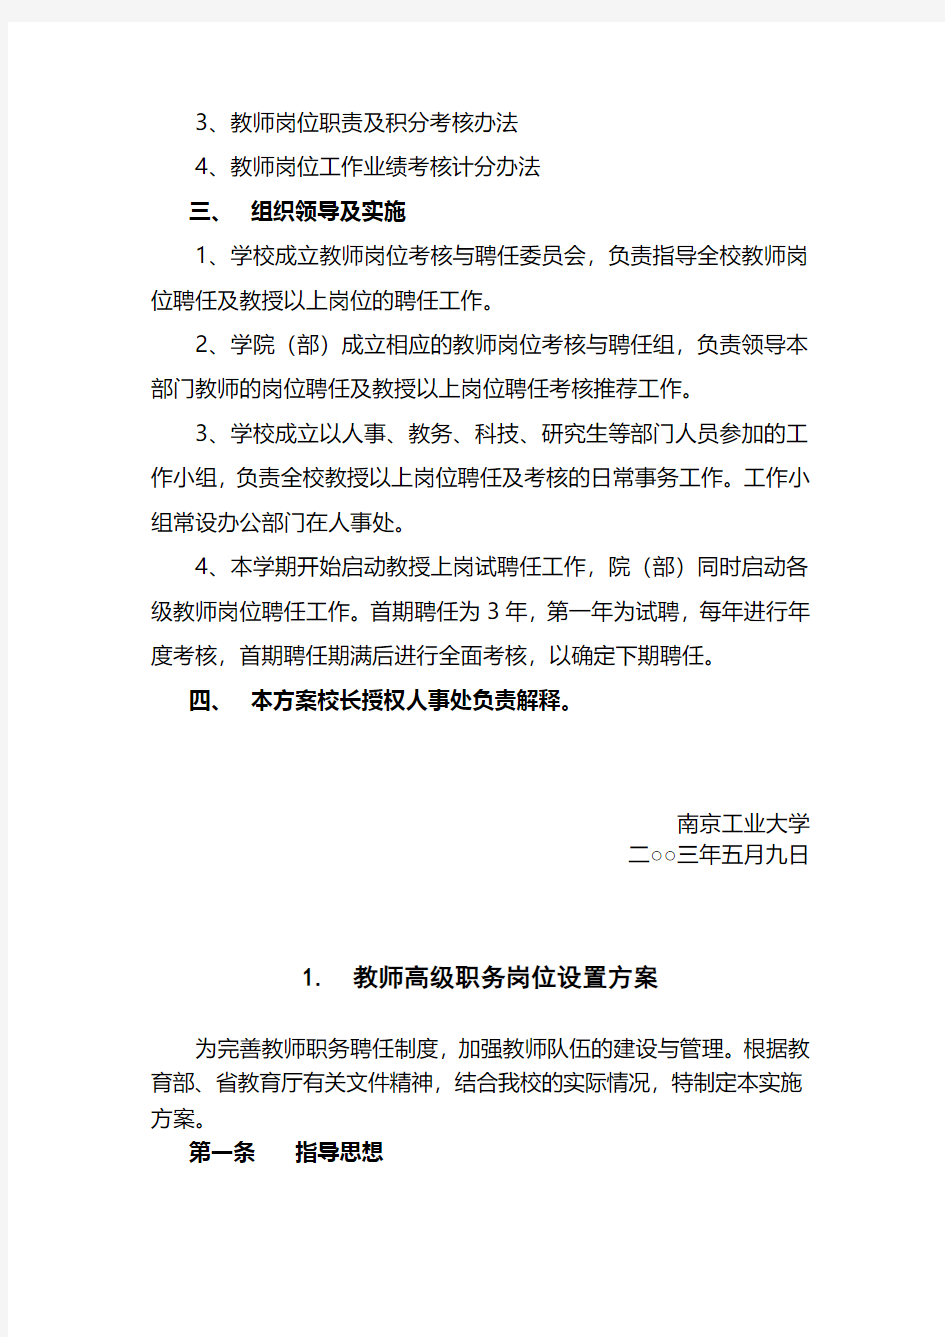 南京工业大学教师岗位聘任及考核试行方案